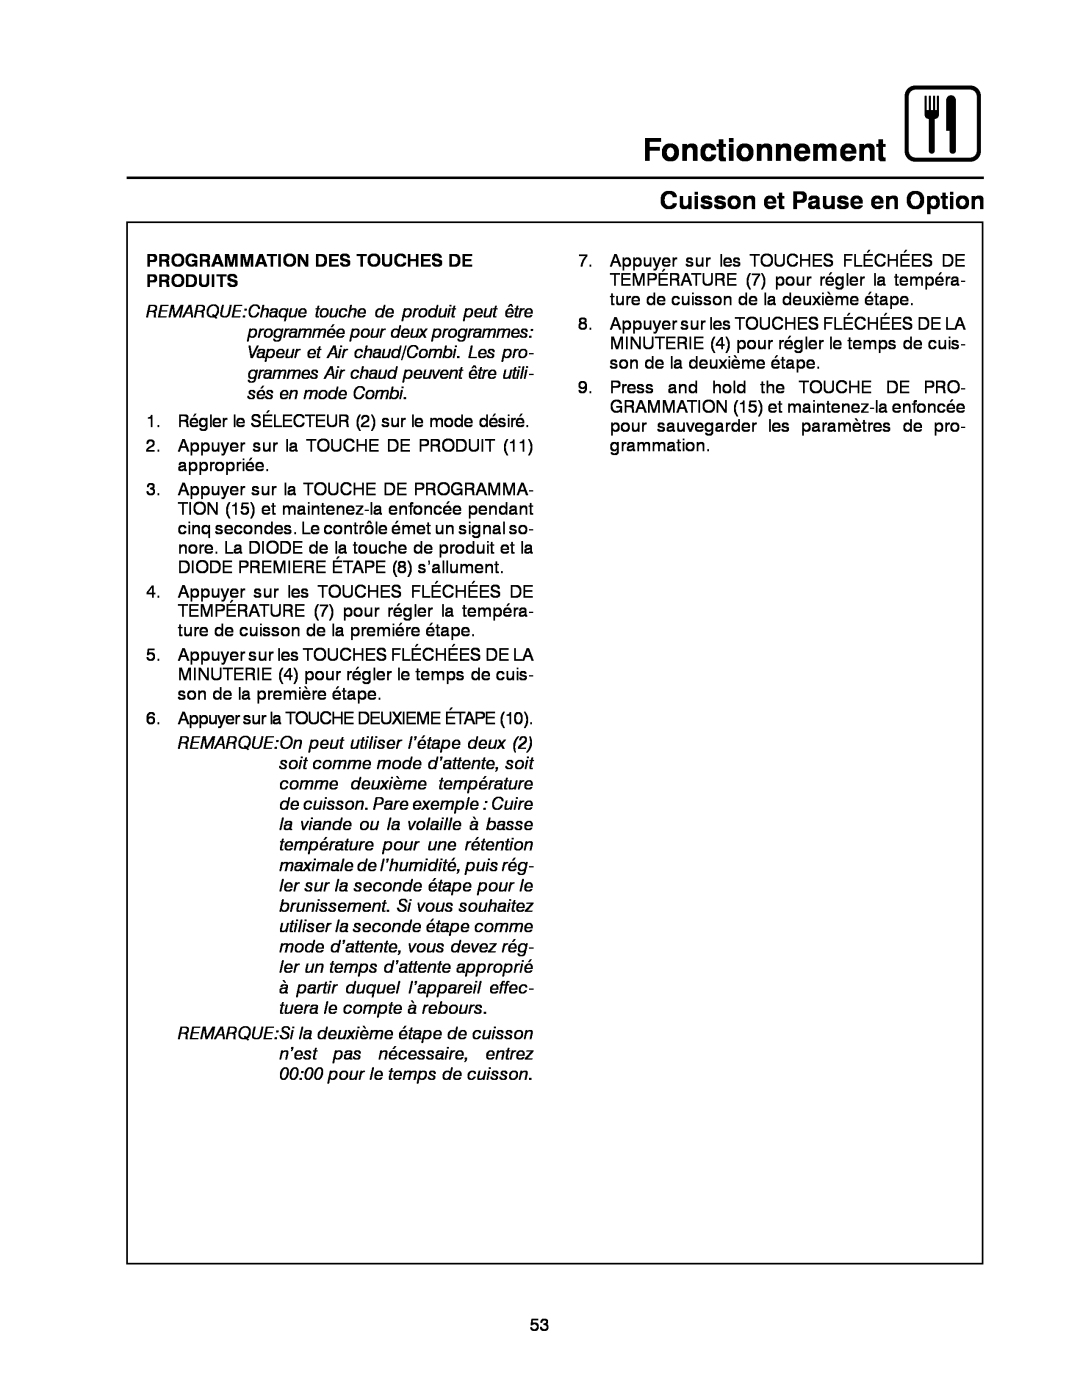 Blodgett BC-20G manual Fonctionnement, Cuisson et Pause en Option, Programmation Des Touches De Produits 